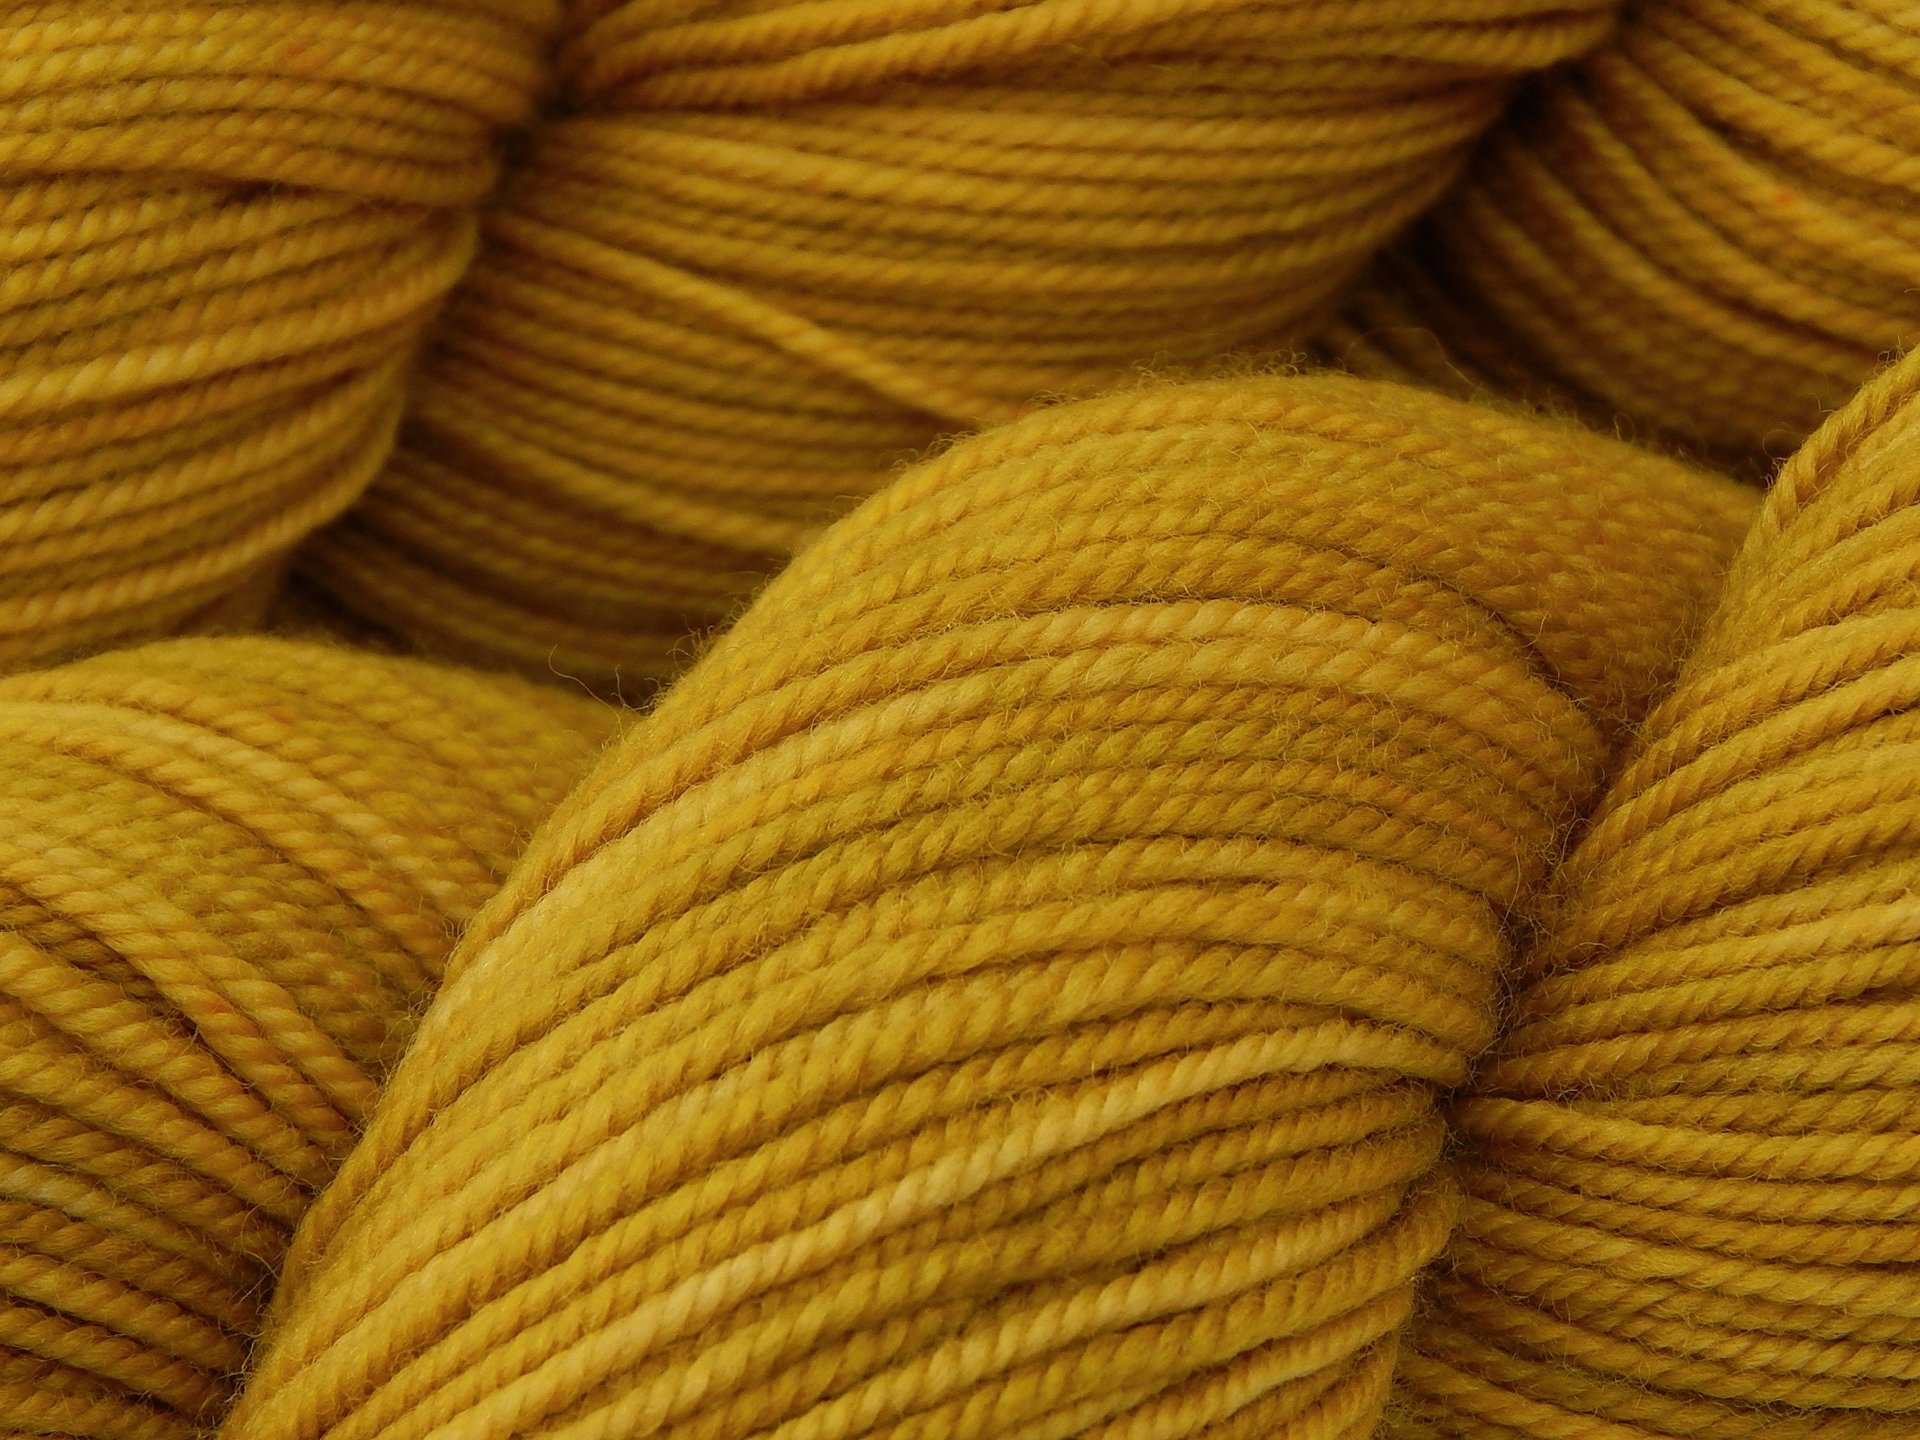 Hand Dyed Yarn, Sport Weight Superwash Merino Wool - Honey Mustard - Indie Dyer Gold Knitting Yarn, Tonal Yellow Heavier Sock Yarn